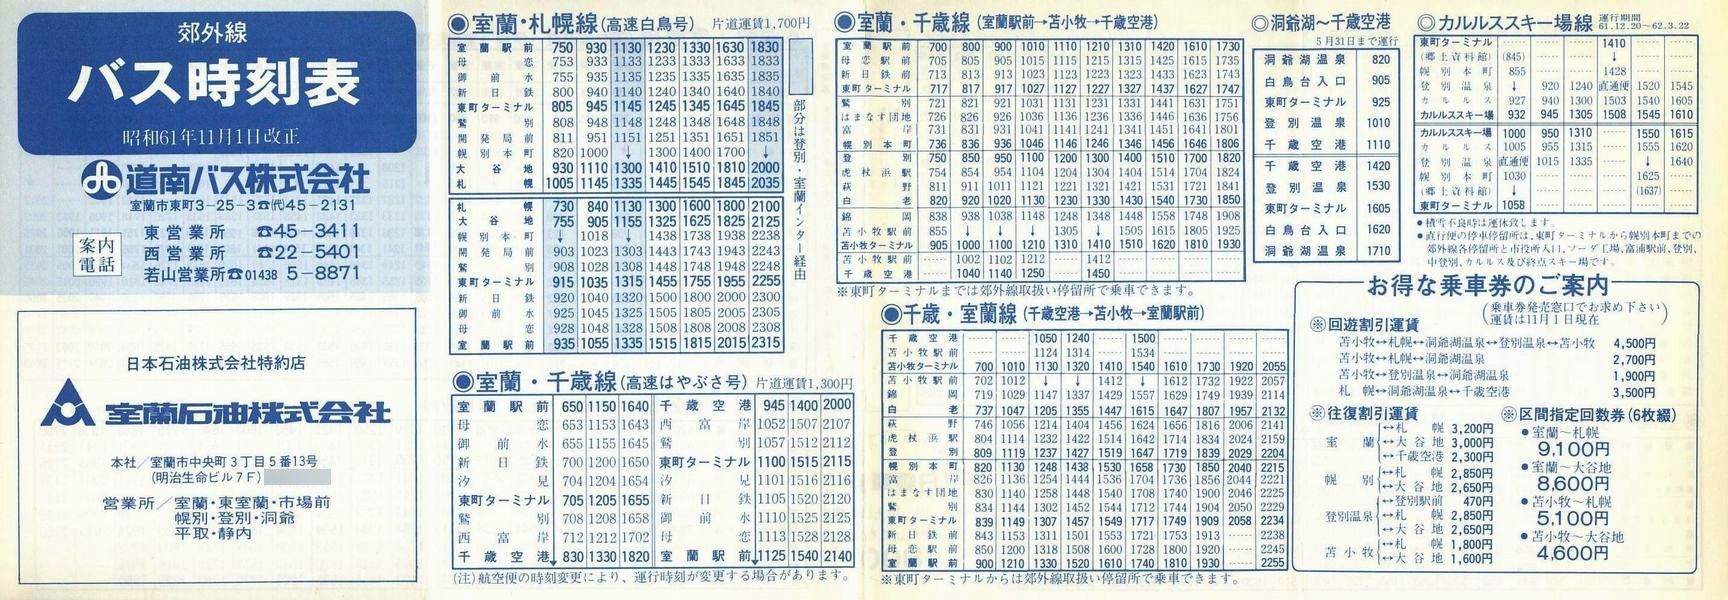 1686-11-01改正_道南バス_室蘭版郊外線時刻表表面